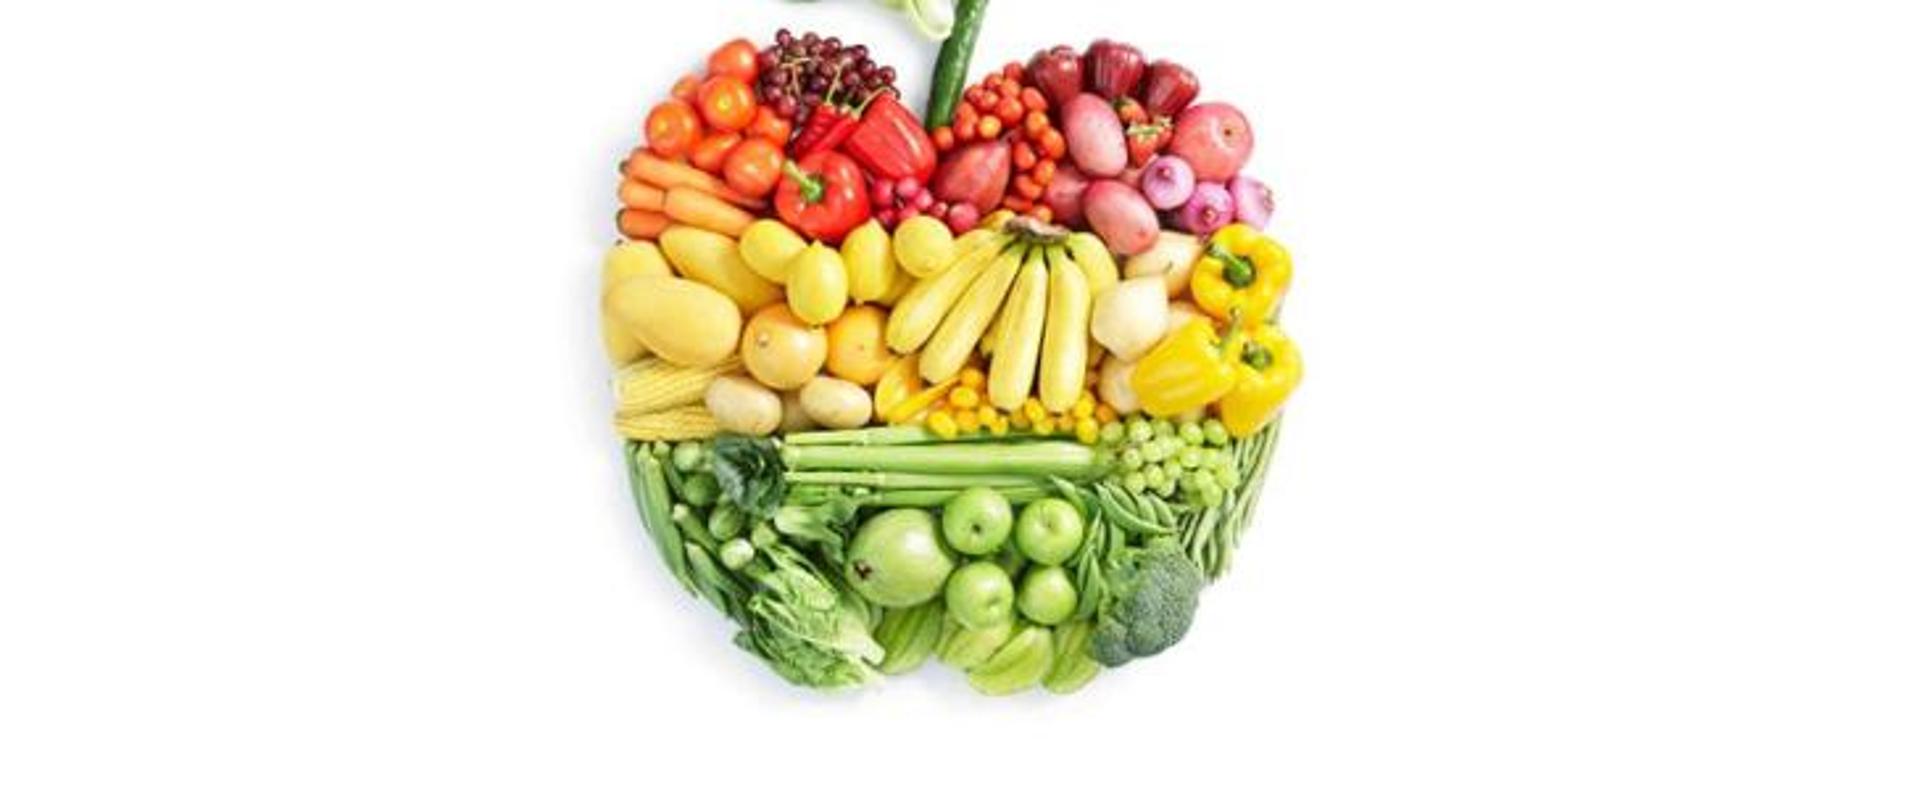 Zdrowe odżywianie dla każdego - grafika z warzywami i owocami